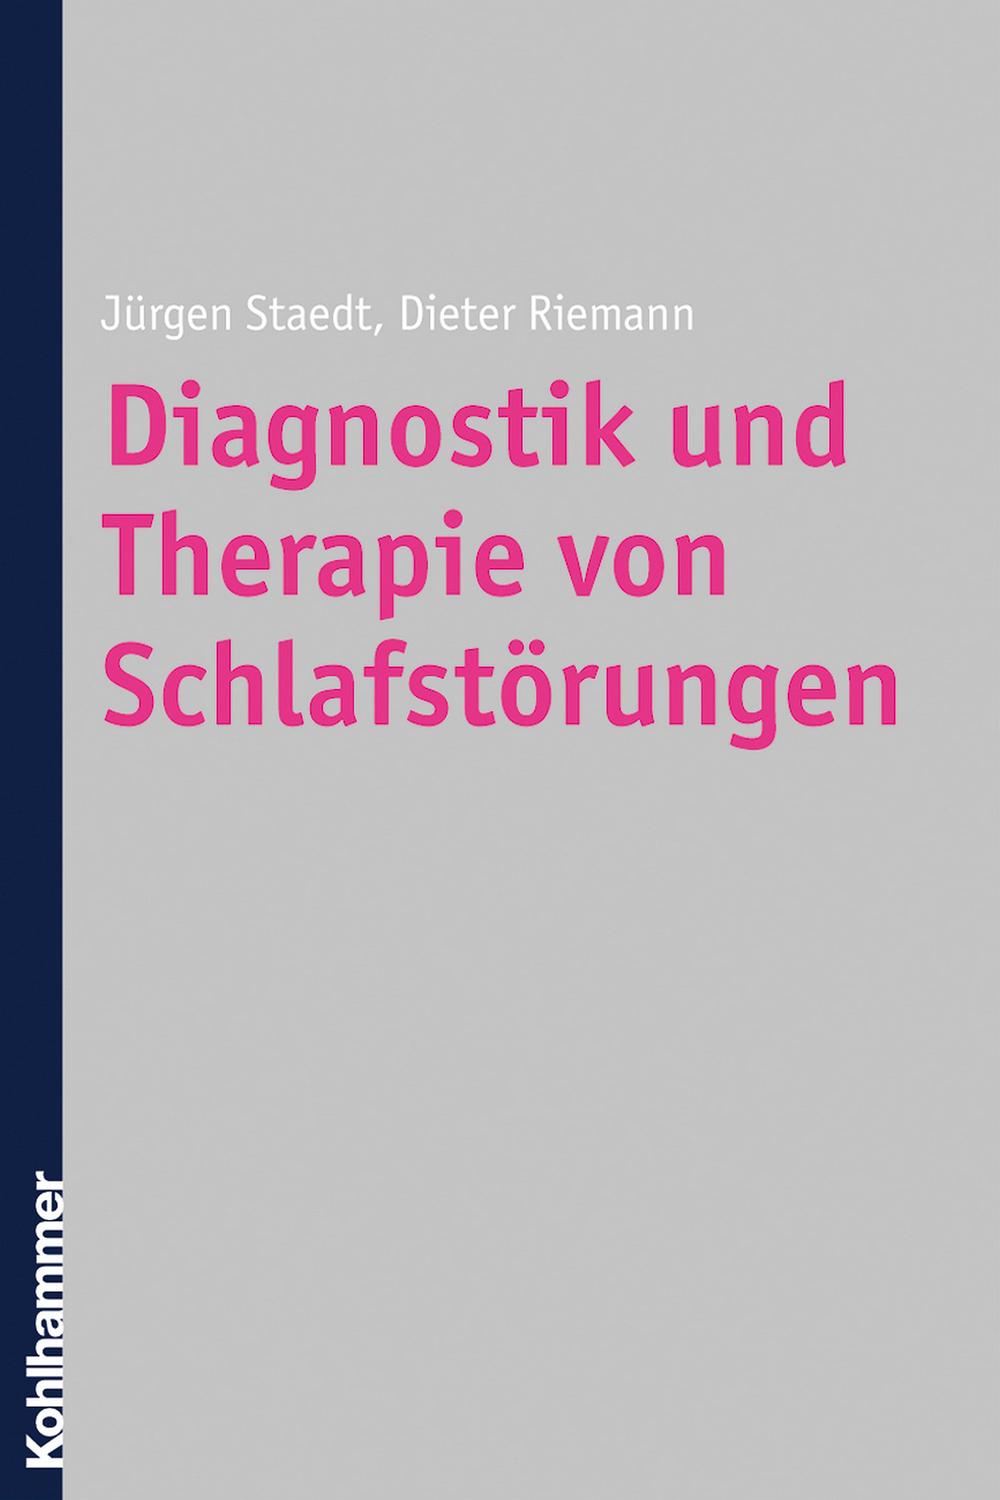 Diagnostik und Therapie von Schlafstörungen - Jürgen Staedt, Dieter Riemann